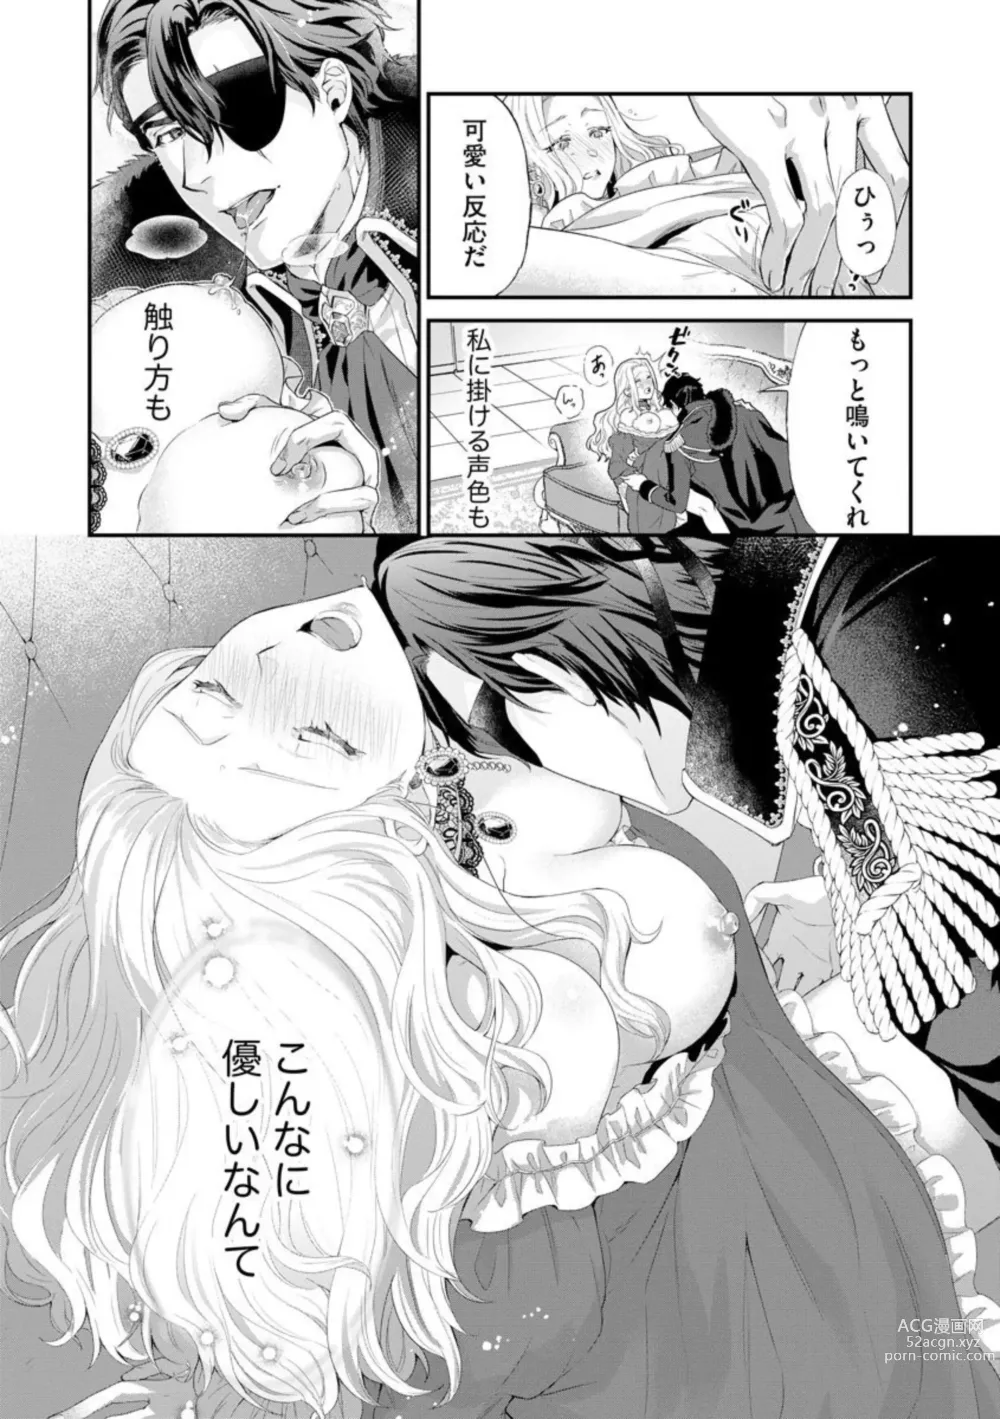 Page 25 of manga Kaibutsu Hakushaku no Amai Hana Akuyaku Reijou wa Bed de Midare Chiru 1